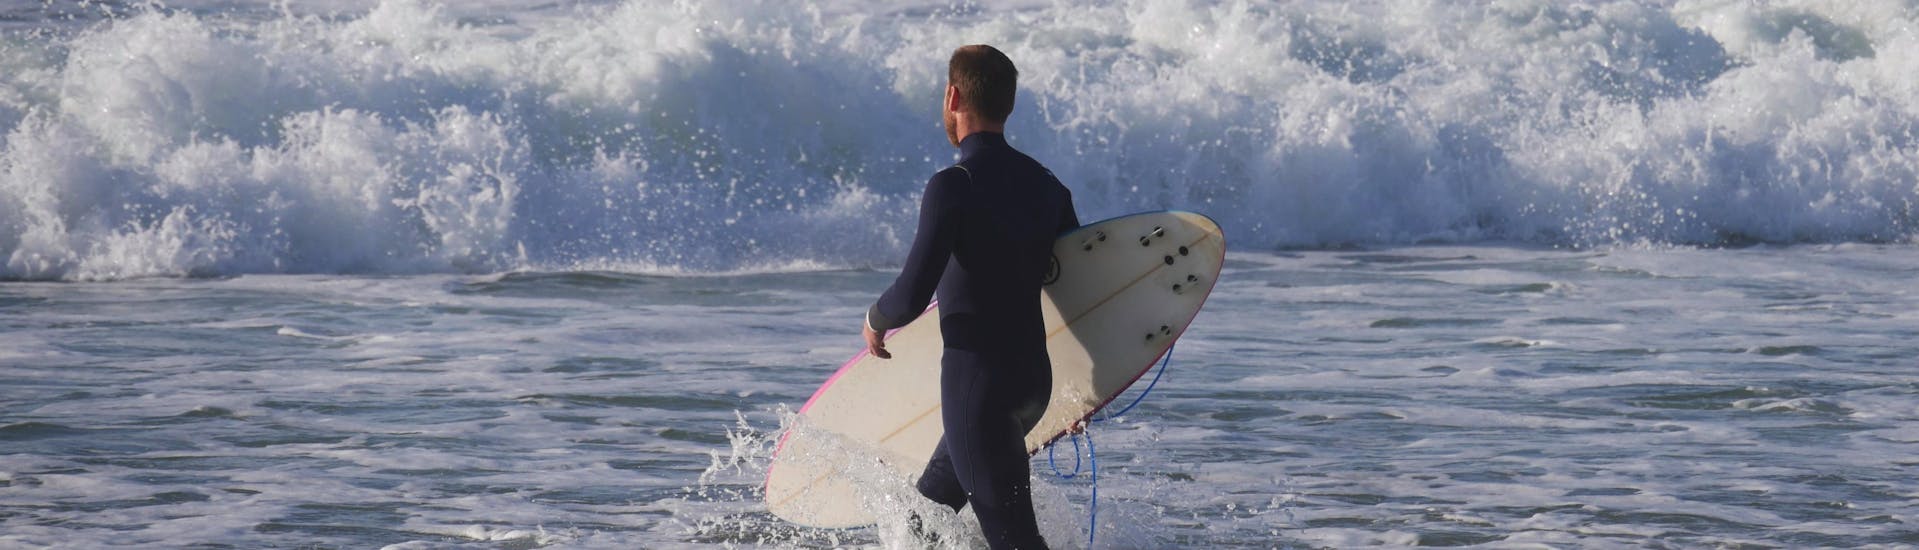 Un surfeur transporte sa planche dans la mer lors de sa session de surf à Mimizan.